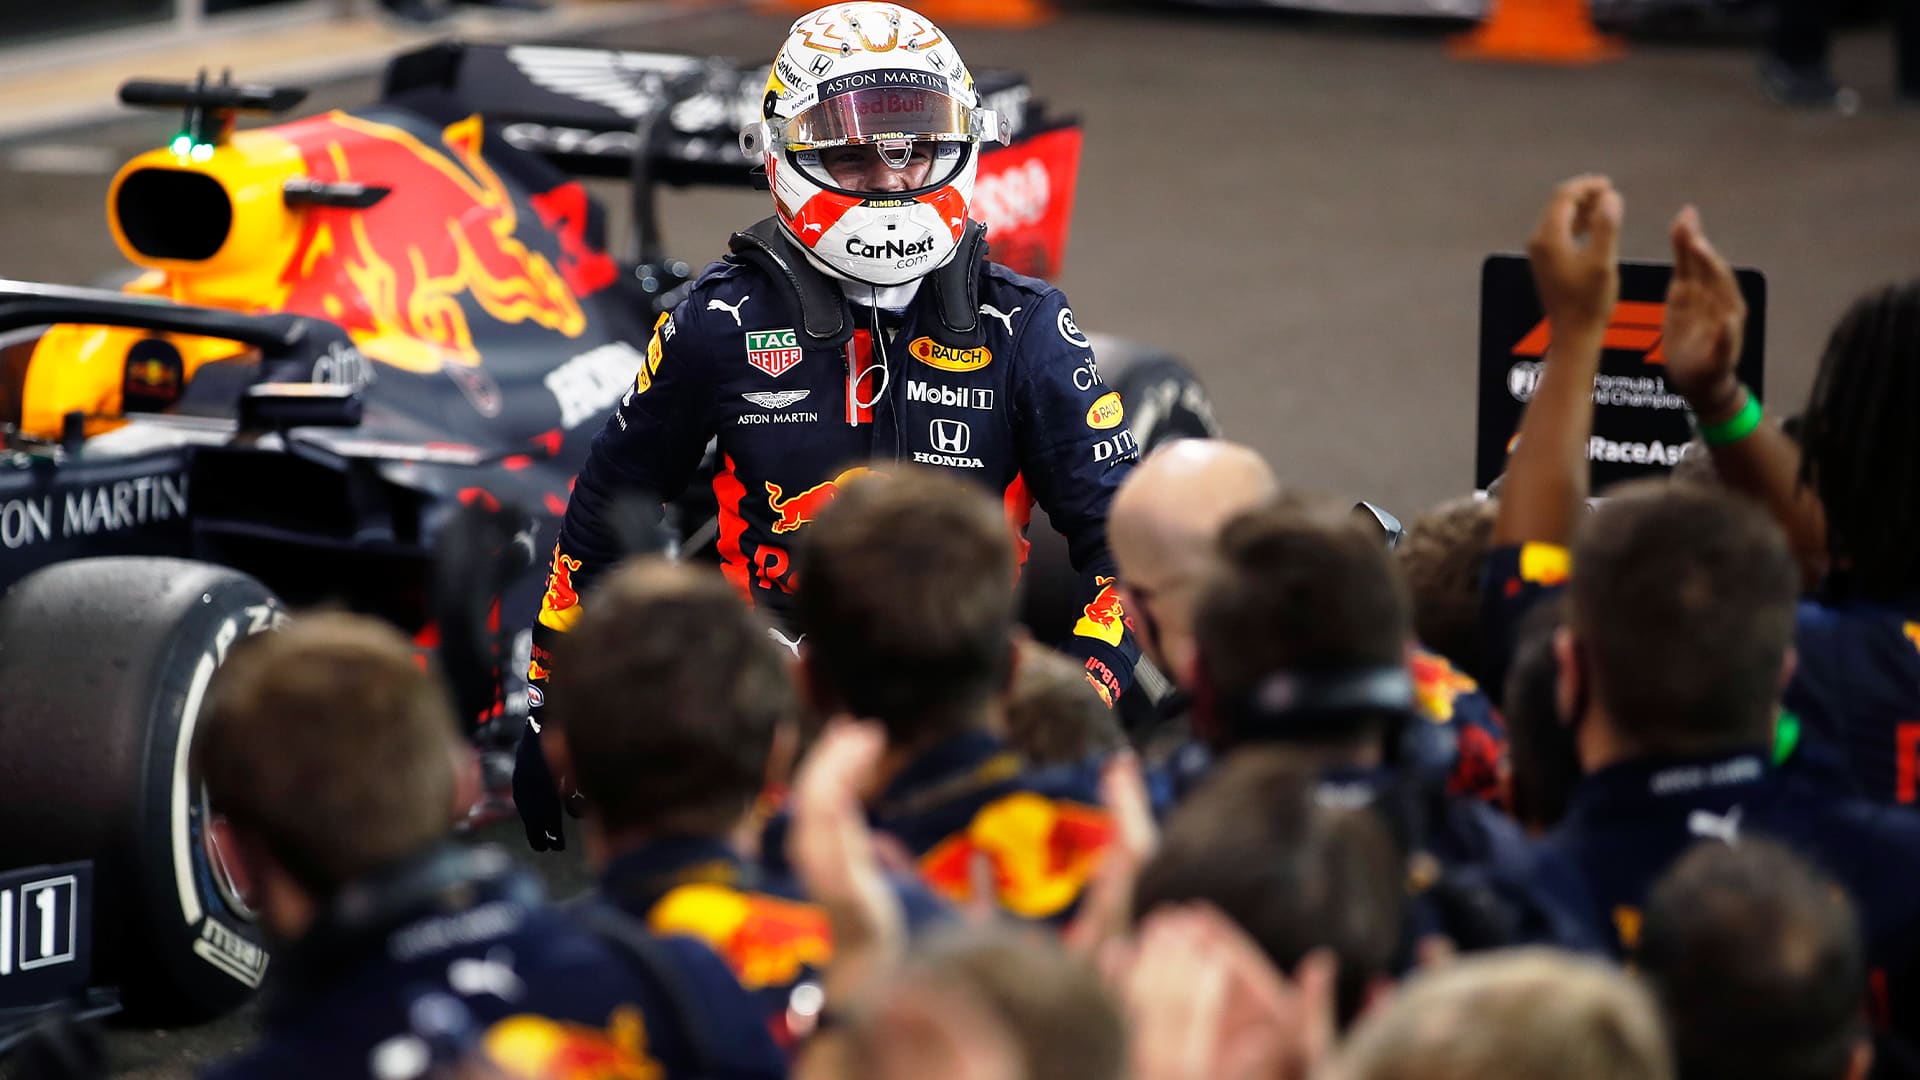 Dominante victoria de Max Verstappen en Abu Dhabi